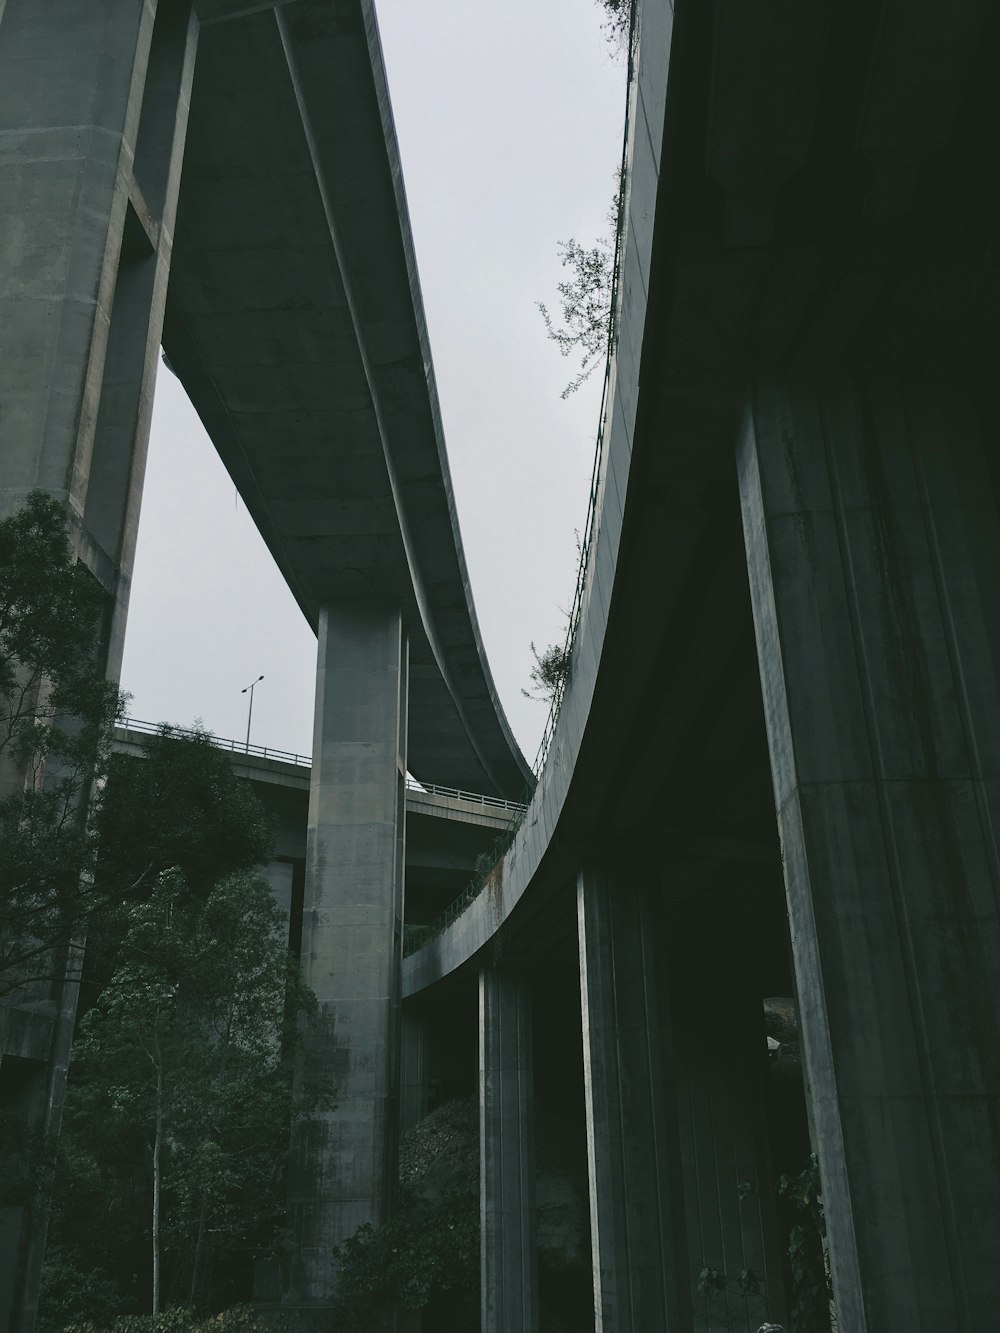 Photographie en niveaux de gris et en contre-plongée d’un pont en béton gris